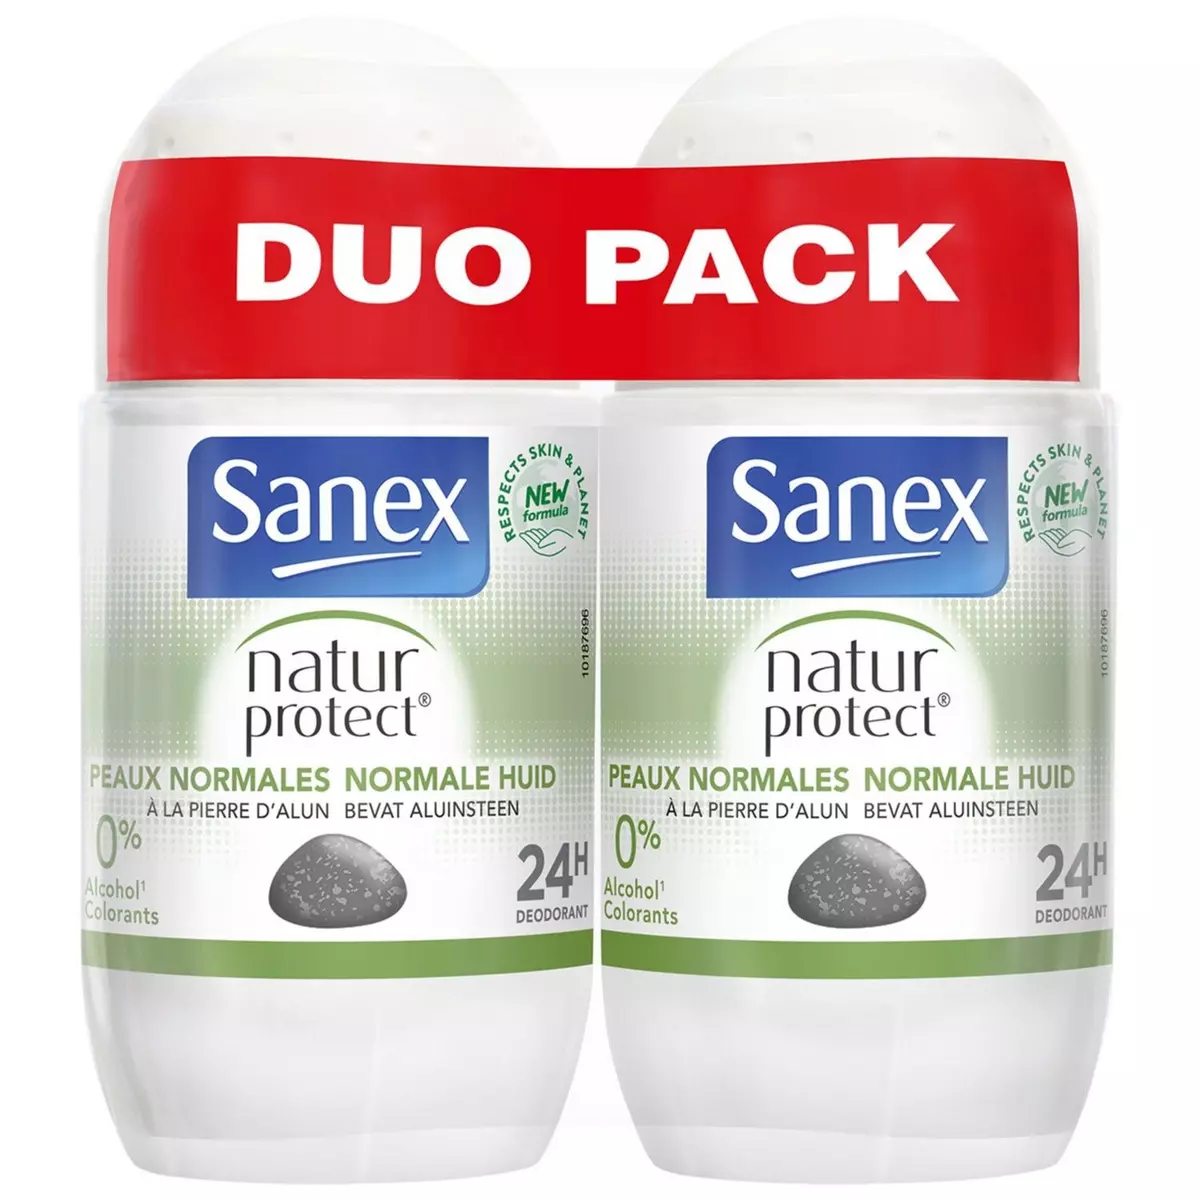 SANEX Nature protect Déodorant bille 24h peaux normal à la pierre d'alun 2x50ml